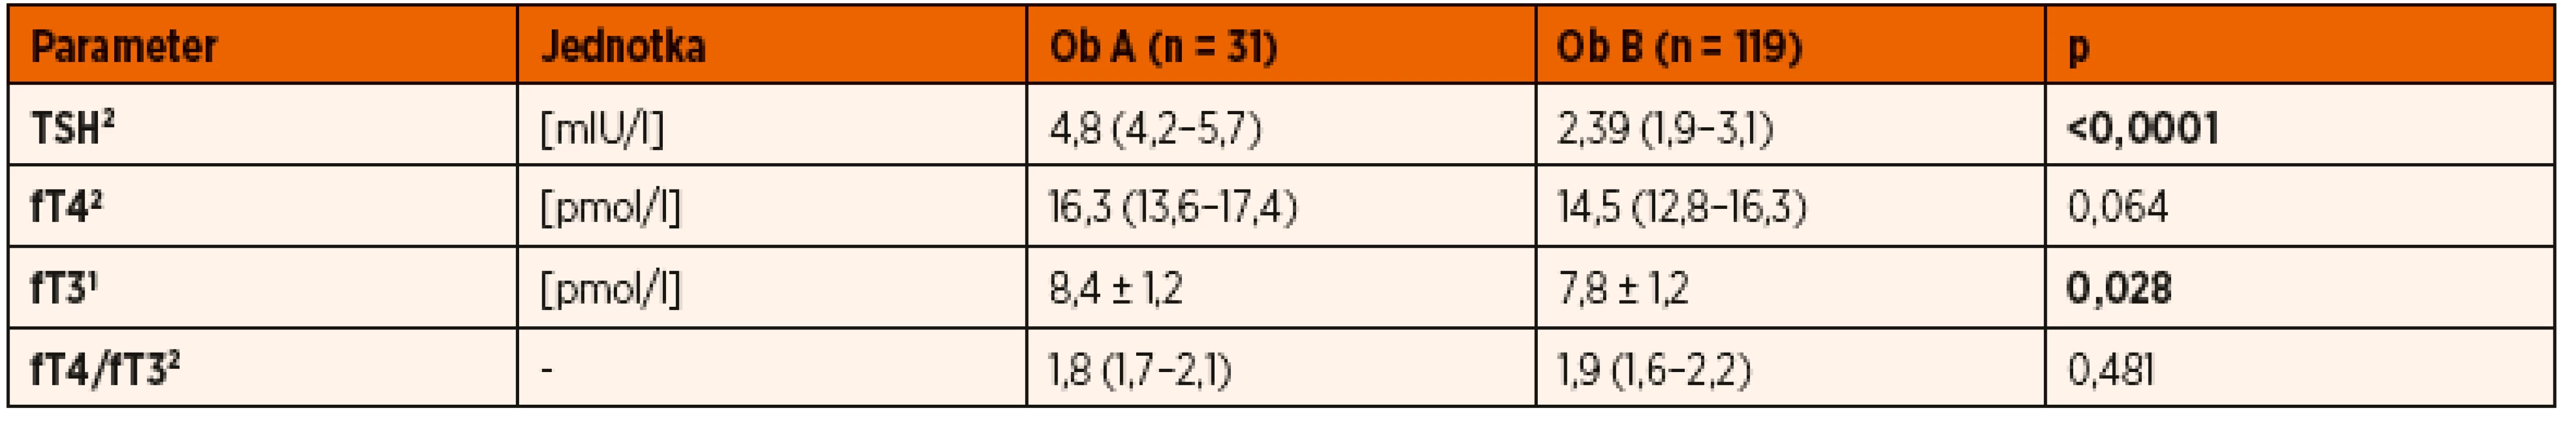 Koncentrácie hormónov štítnej žľazy u obéznych detí rozdelených podľa hodnoty TSH: Ob A (TSH ≥4 mIU/l) a Ob B (TSH <4 mIU/l).